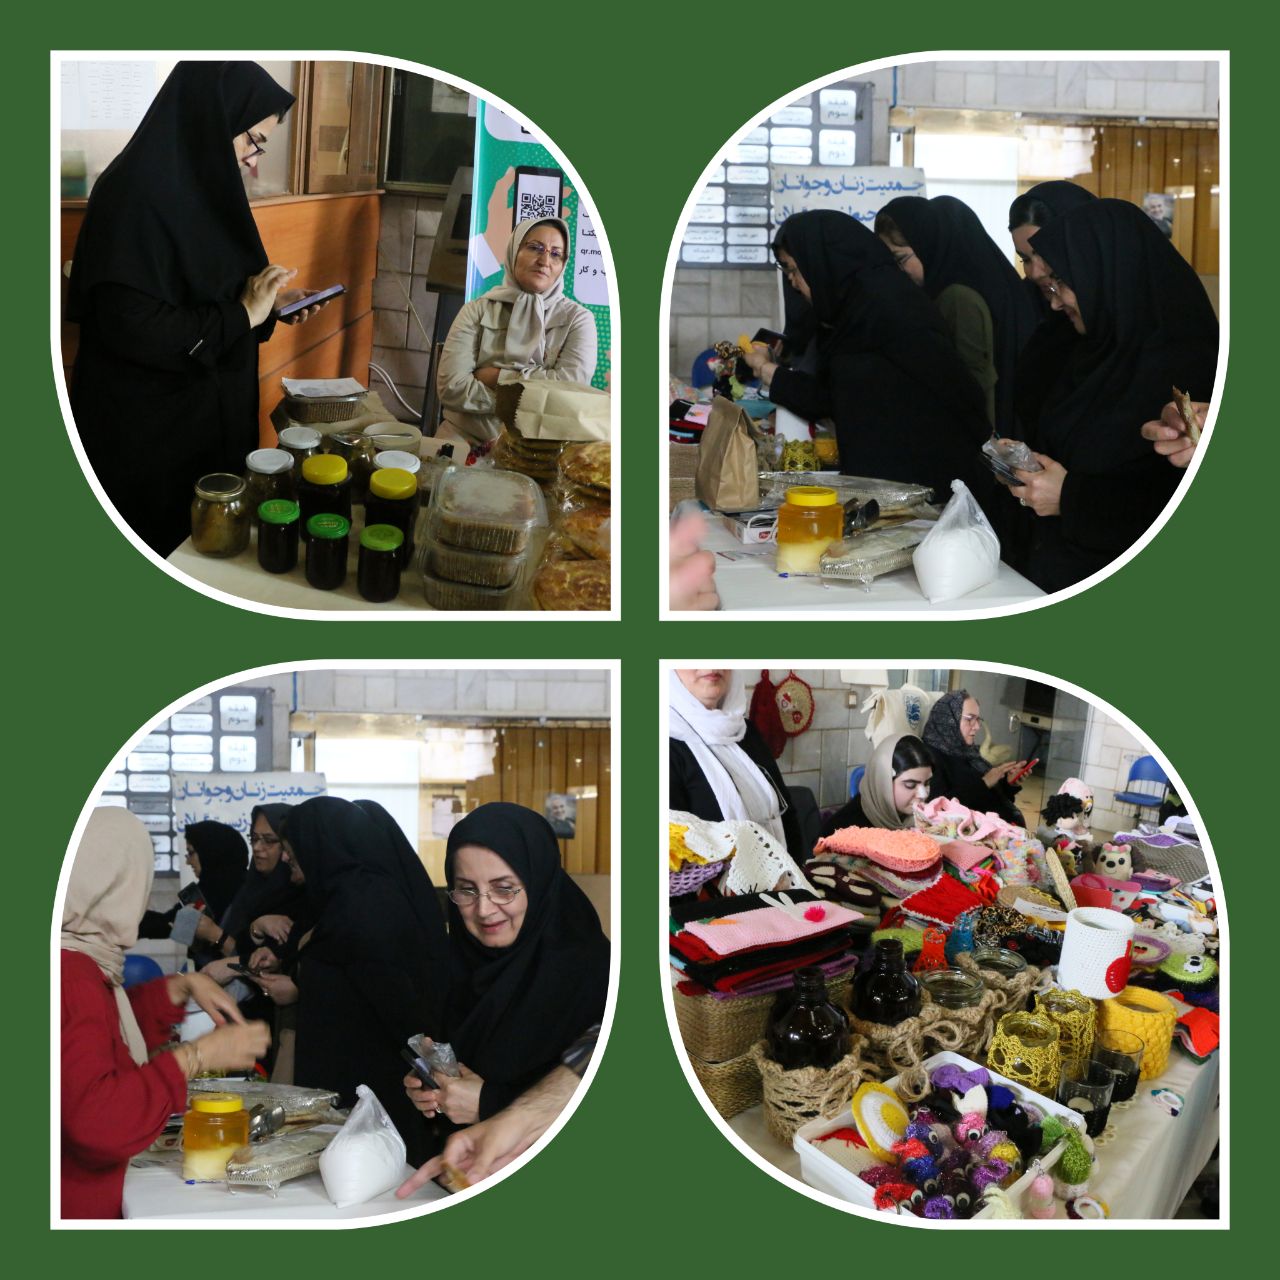 برپایی نمایشگاه صنایع دستی و محصولات غذایی در اداره کل حفاظت محیط زیست استان گیلان + فیلم